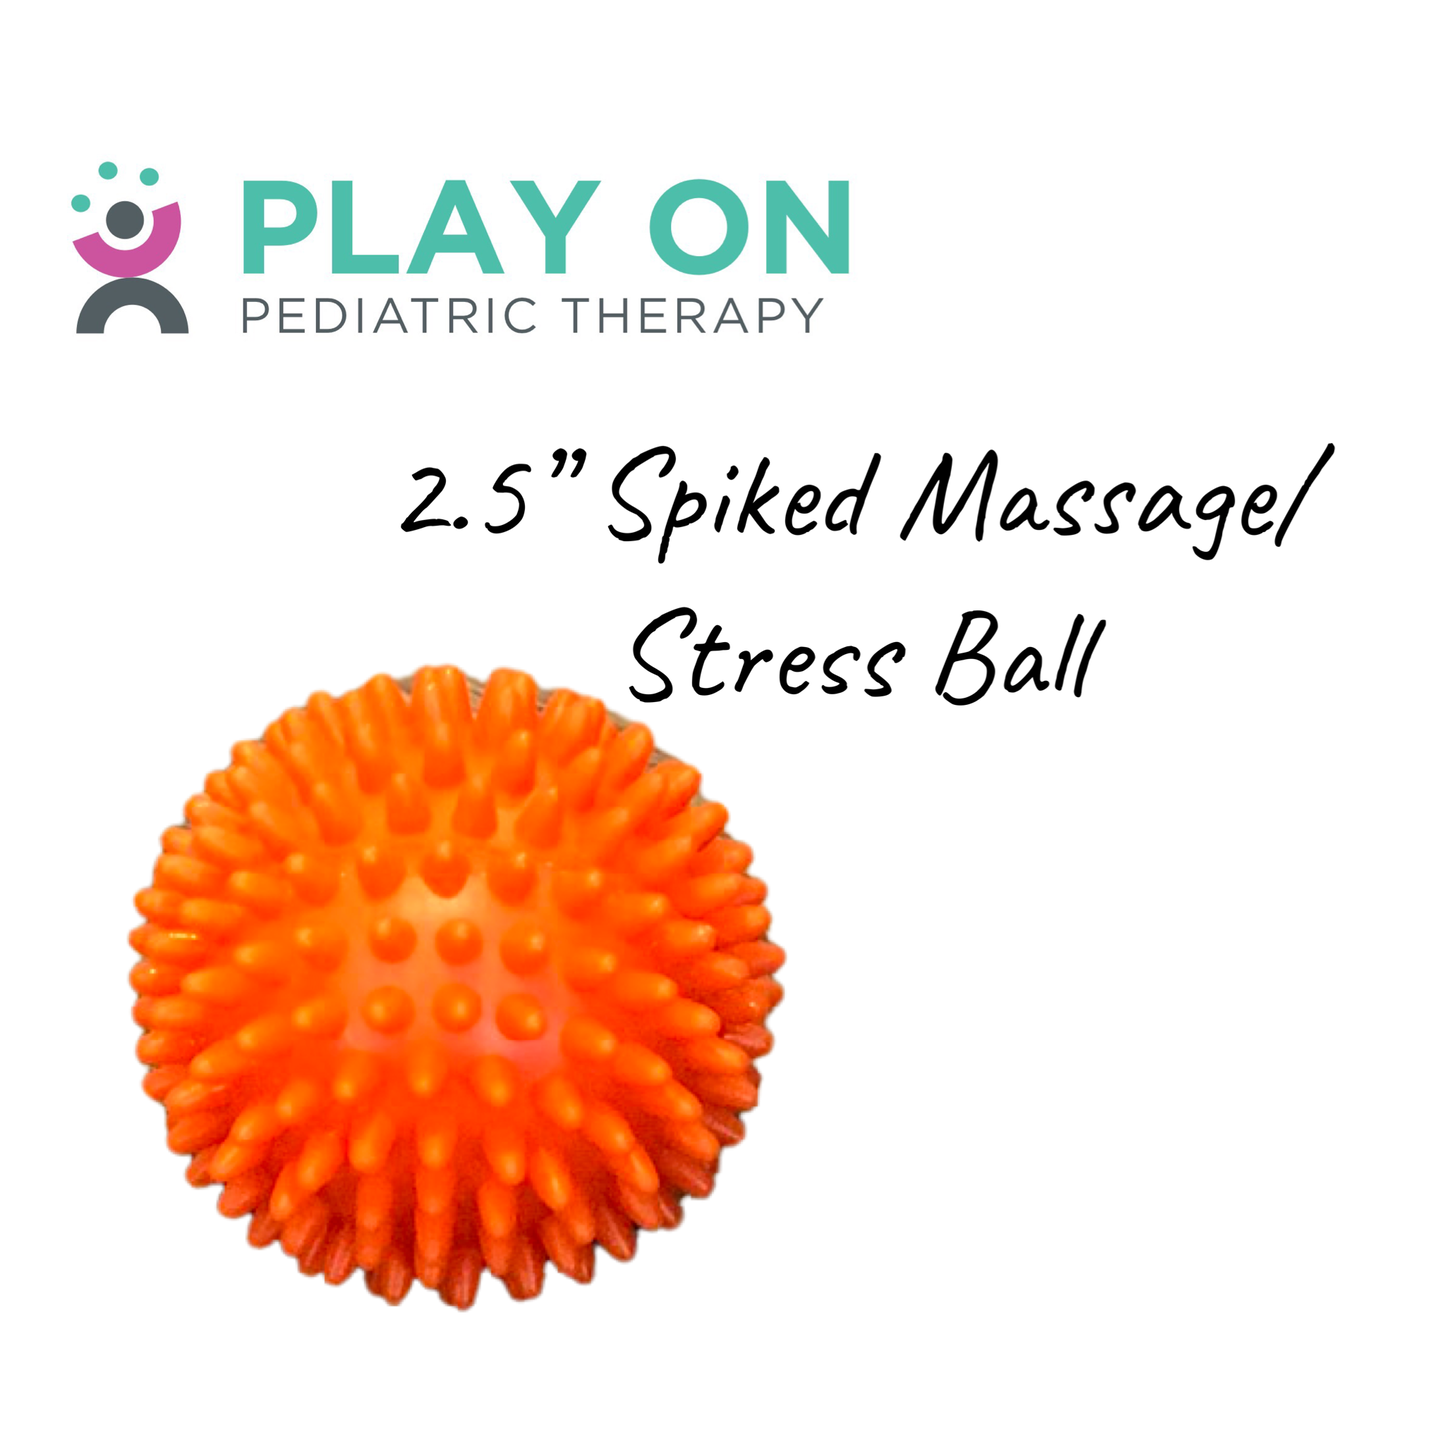 Spiked Massage/Stress Ball